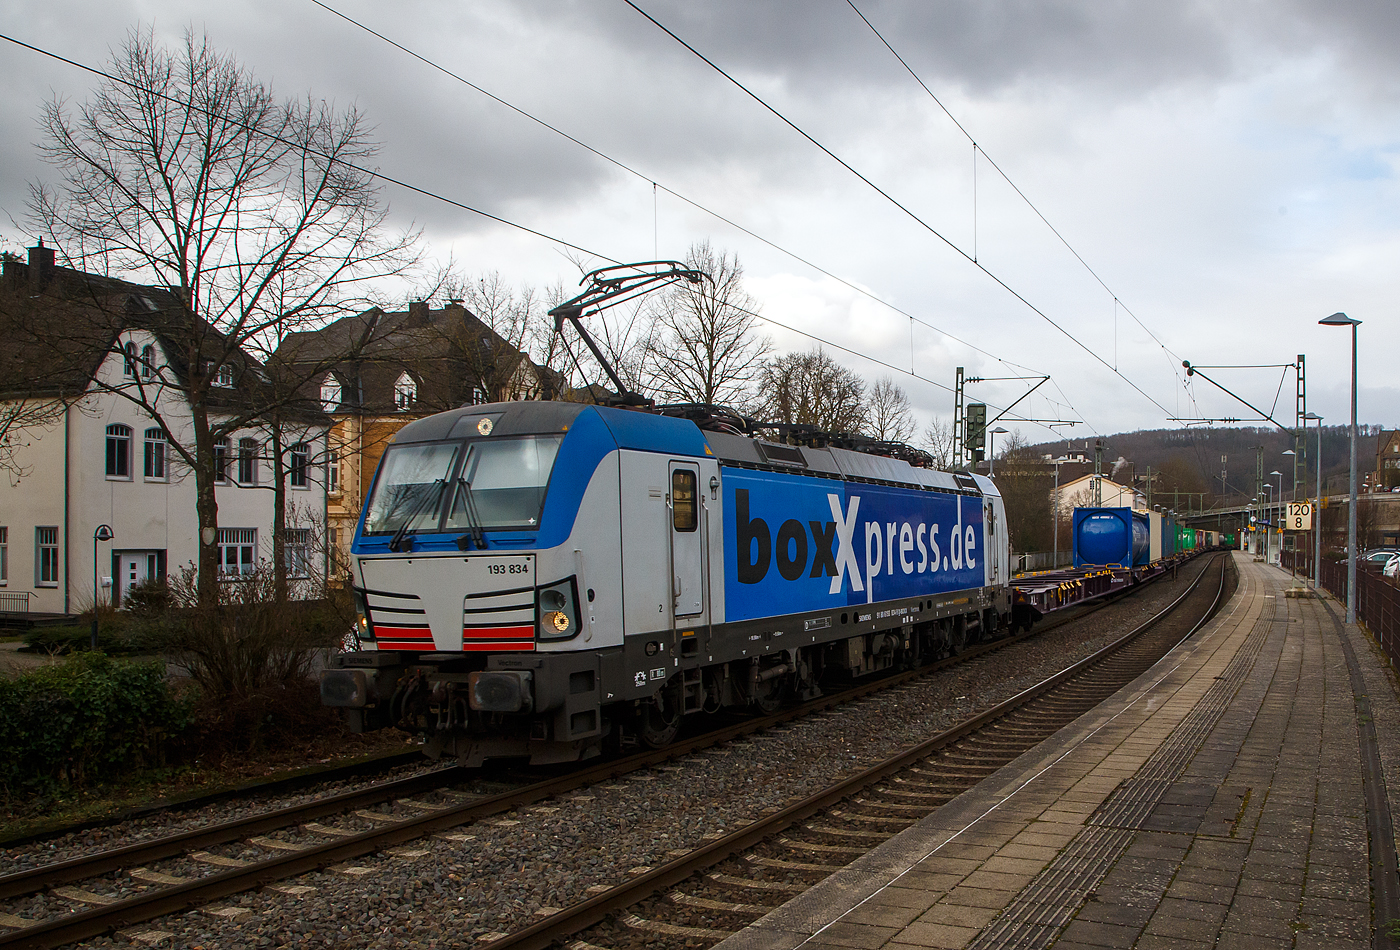 Die 193 834-9 (91 80 6193 834-9 D-BOXX) der boxXpress.de GmbH (Hamburg) fährt am 02.12.2021 mit einem Containerzug durch Kirchen/Sieg in Richtung Köln. Der Containerzug bestand aus Containertragwagen der Gattung Sggnss-xl der RailRelease B.V. (Rotterdam).

Die SIEMENS Vectron MS (Leistung 6,4 MW), wurde 2017 von Siemens Mobilitiy in München-Allach unter der Fabriknummer 22264 gebaut und an die boxXpress.de geliefert. Sie hat die Zulassungen für Deutschland, Österreich, Italien, die Schweiz und die Niederlande (D, A, I, CH, NL). 